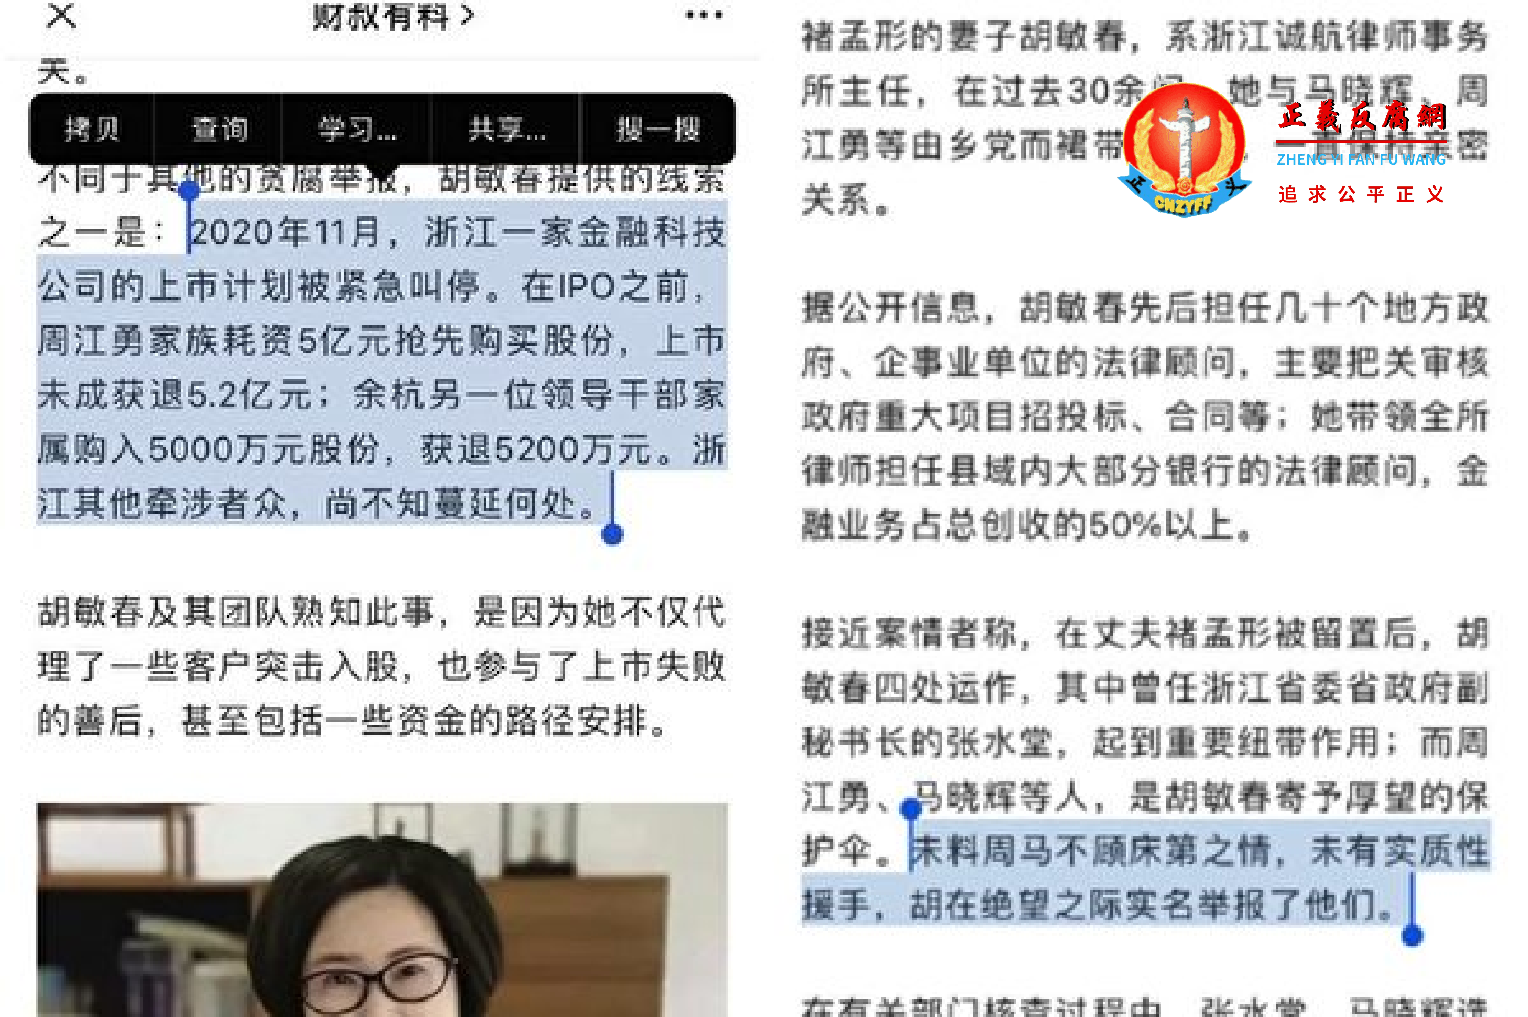 微信公众号披露这一波浙江官场周江勇落马与女律师的检举有关。.png